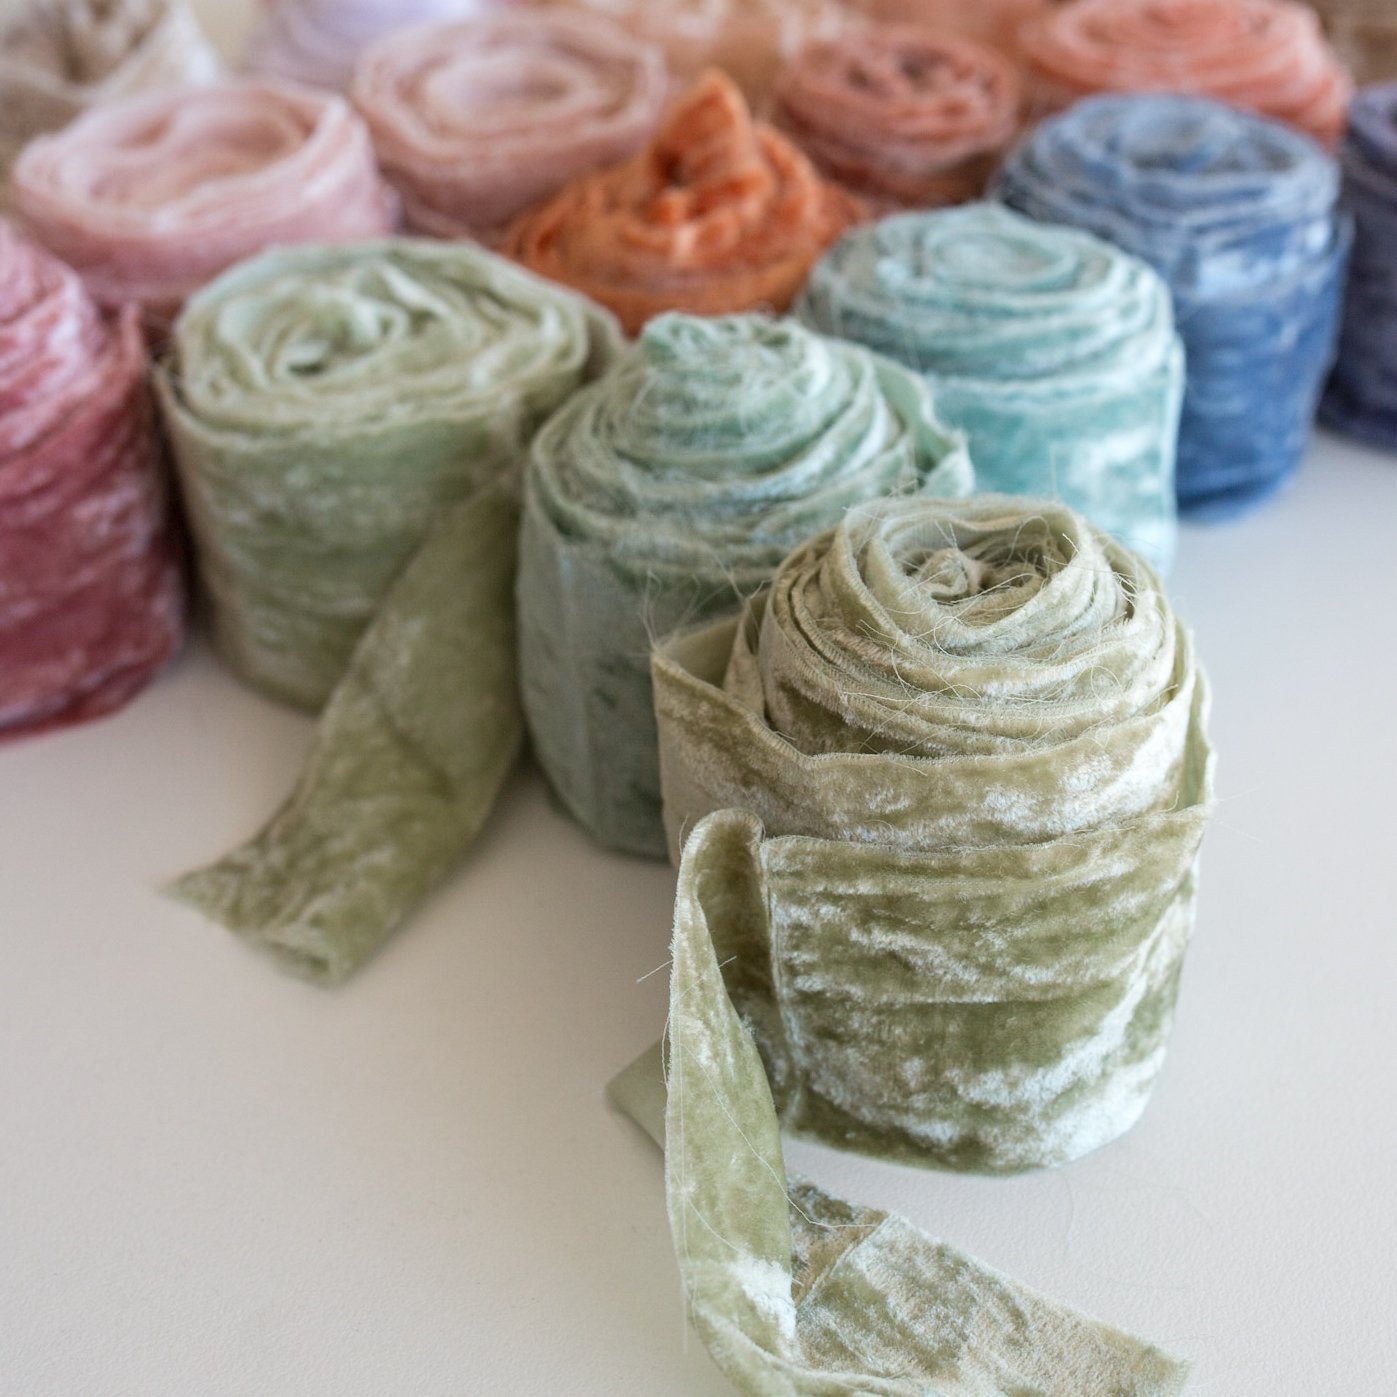 2 Inch Recycled Velvet Ribbon Australia  Buy Silk Velvet Ribbons Online -  Mary Maker Studio - Macrame & Weaving Supplies and Education.